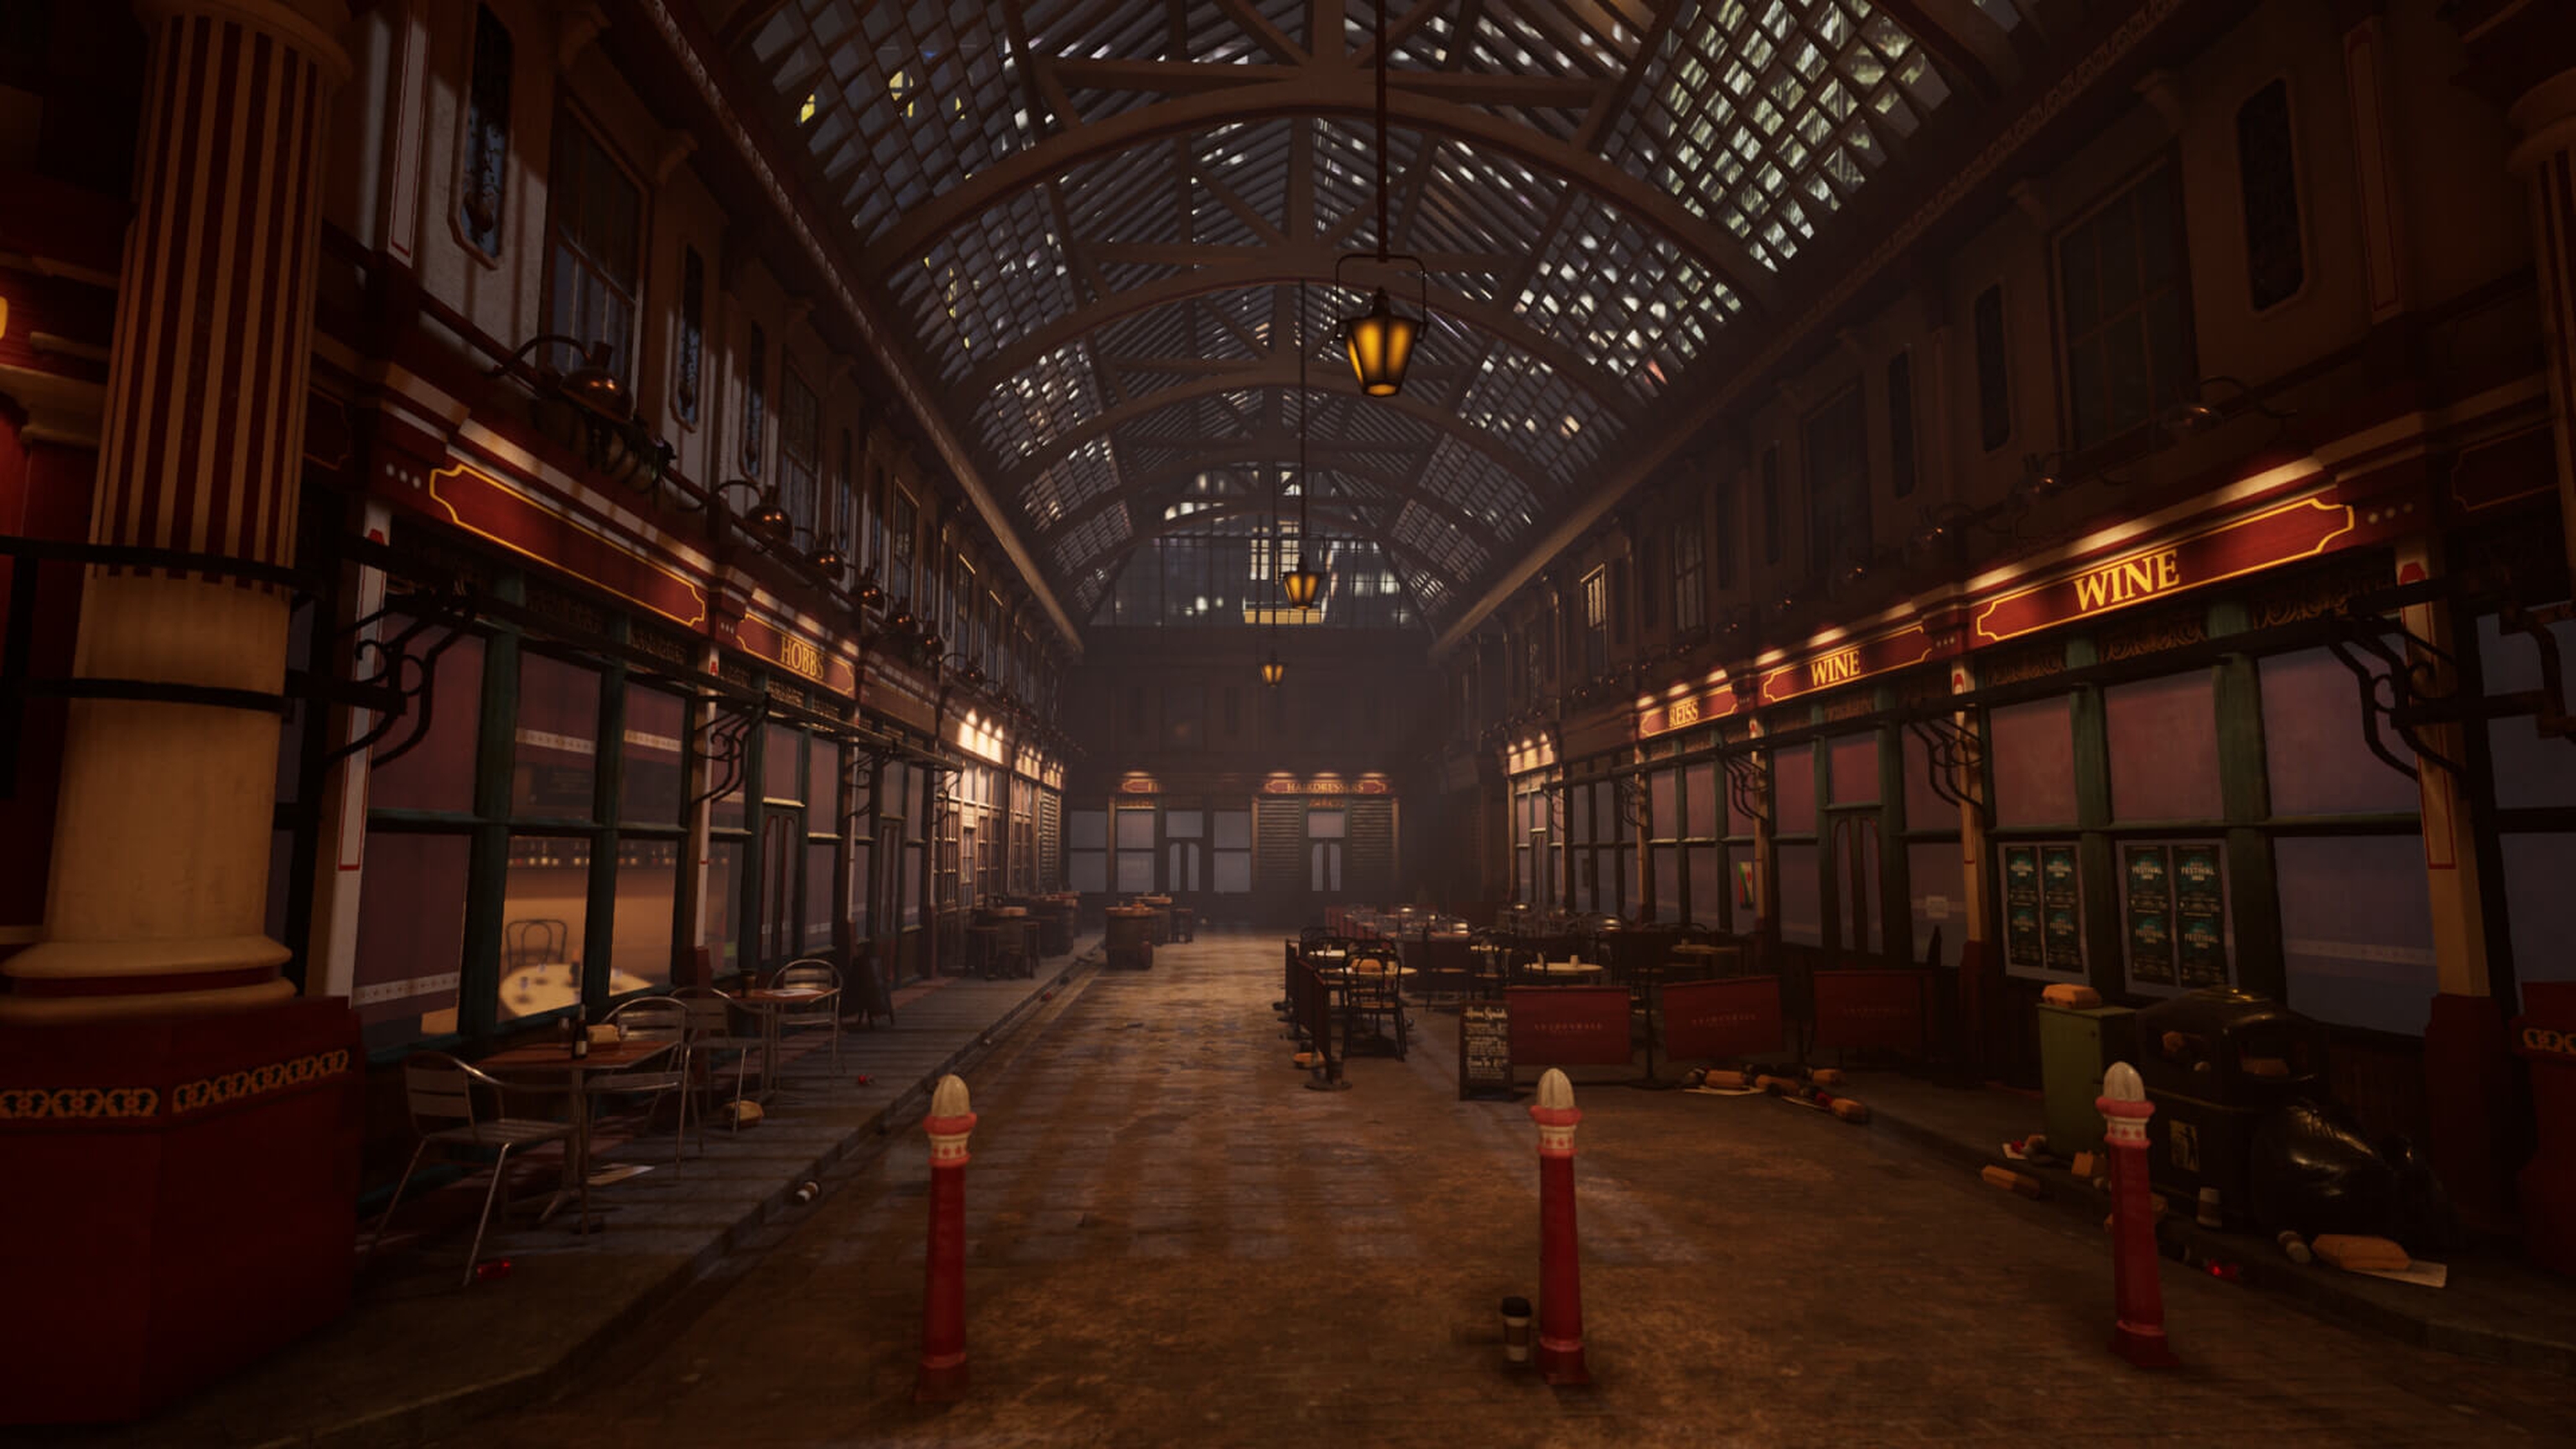 An empty Leadenhall market at night